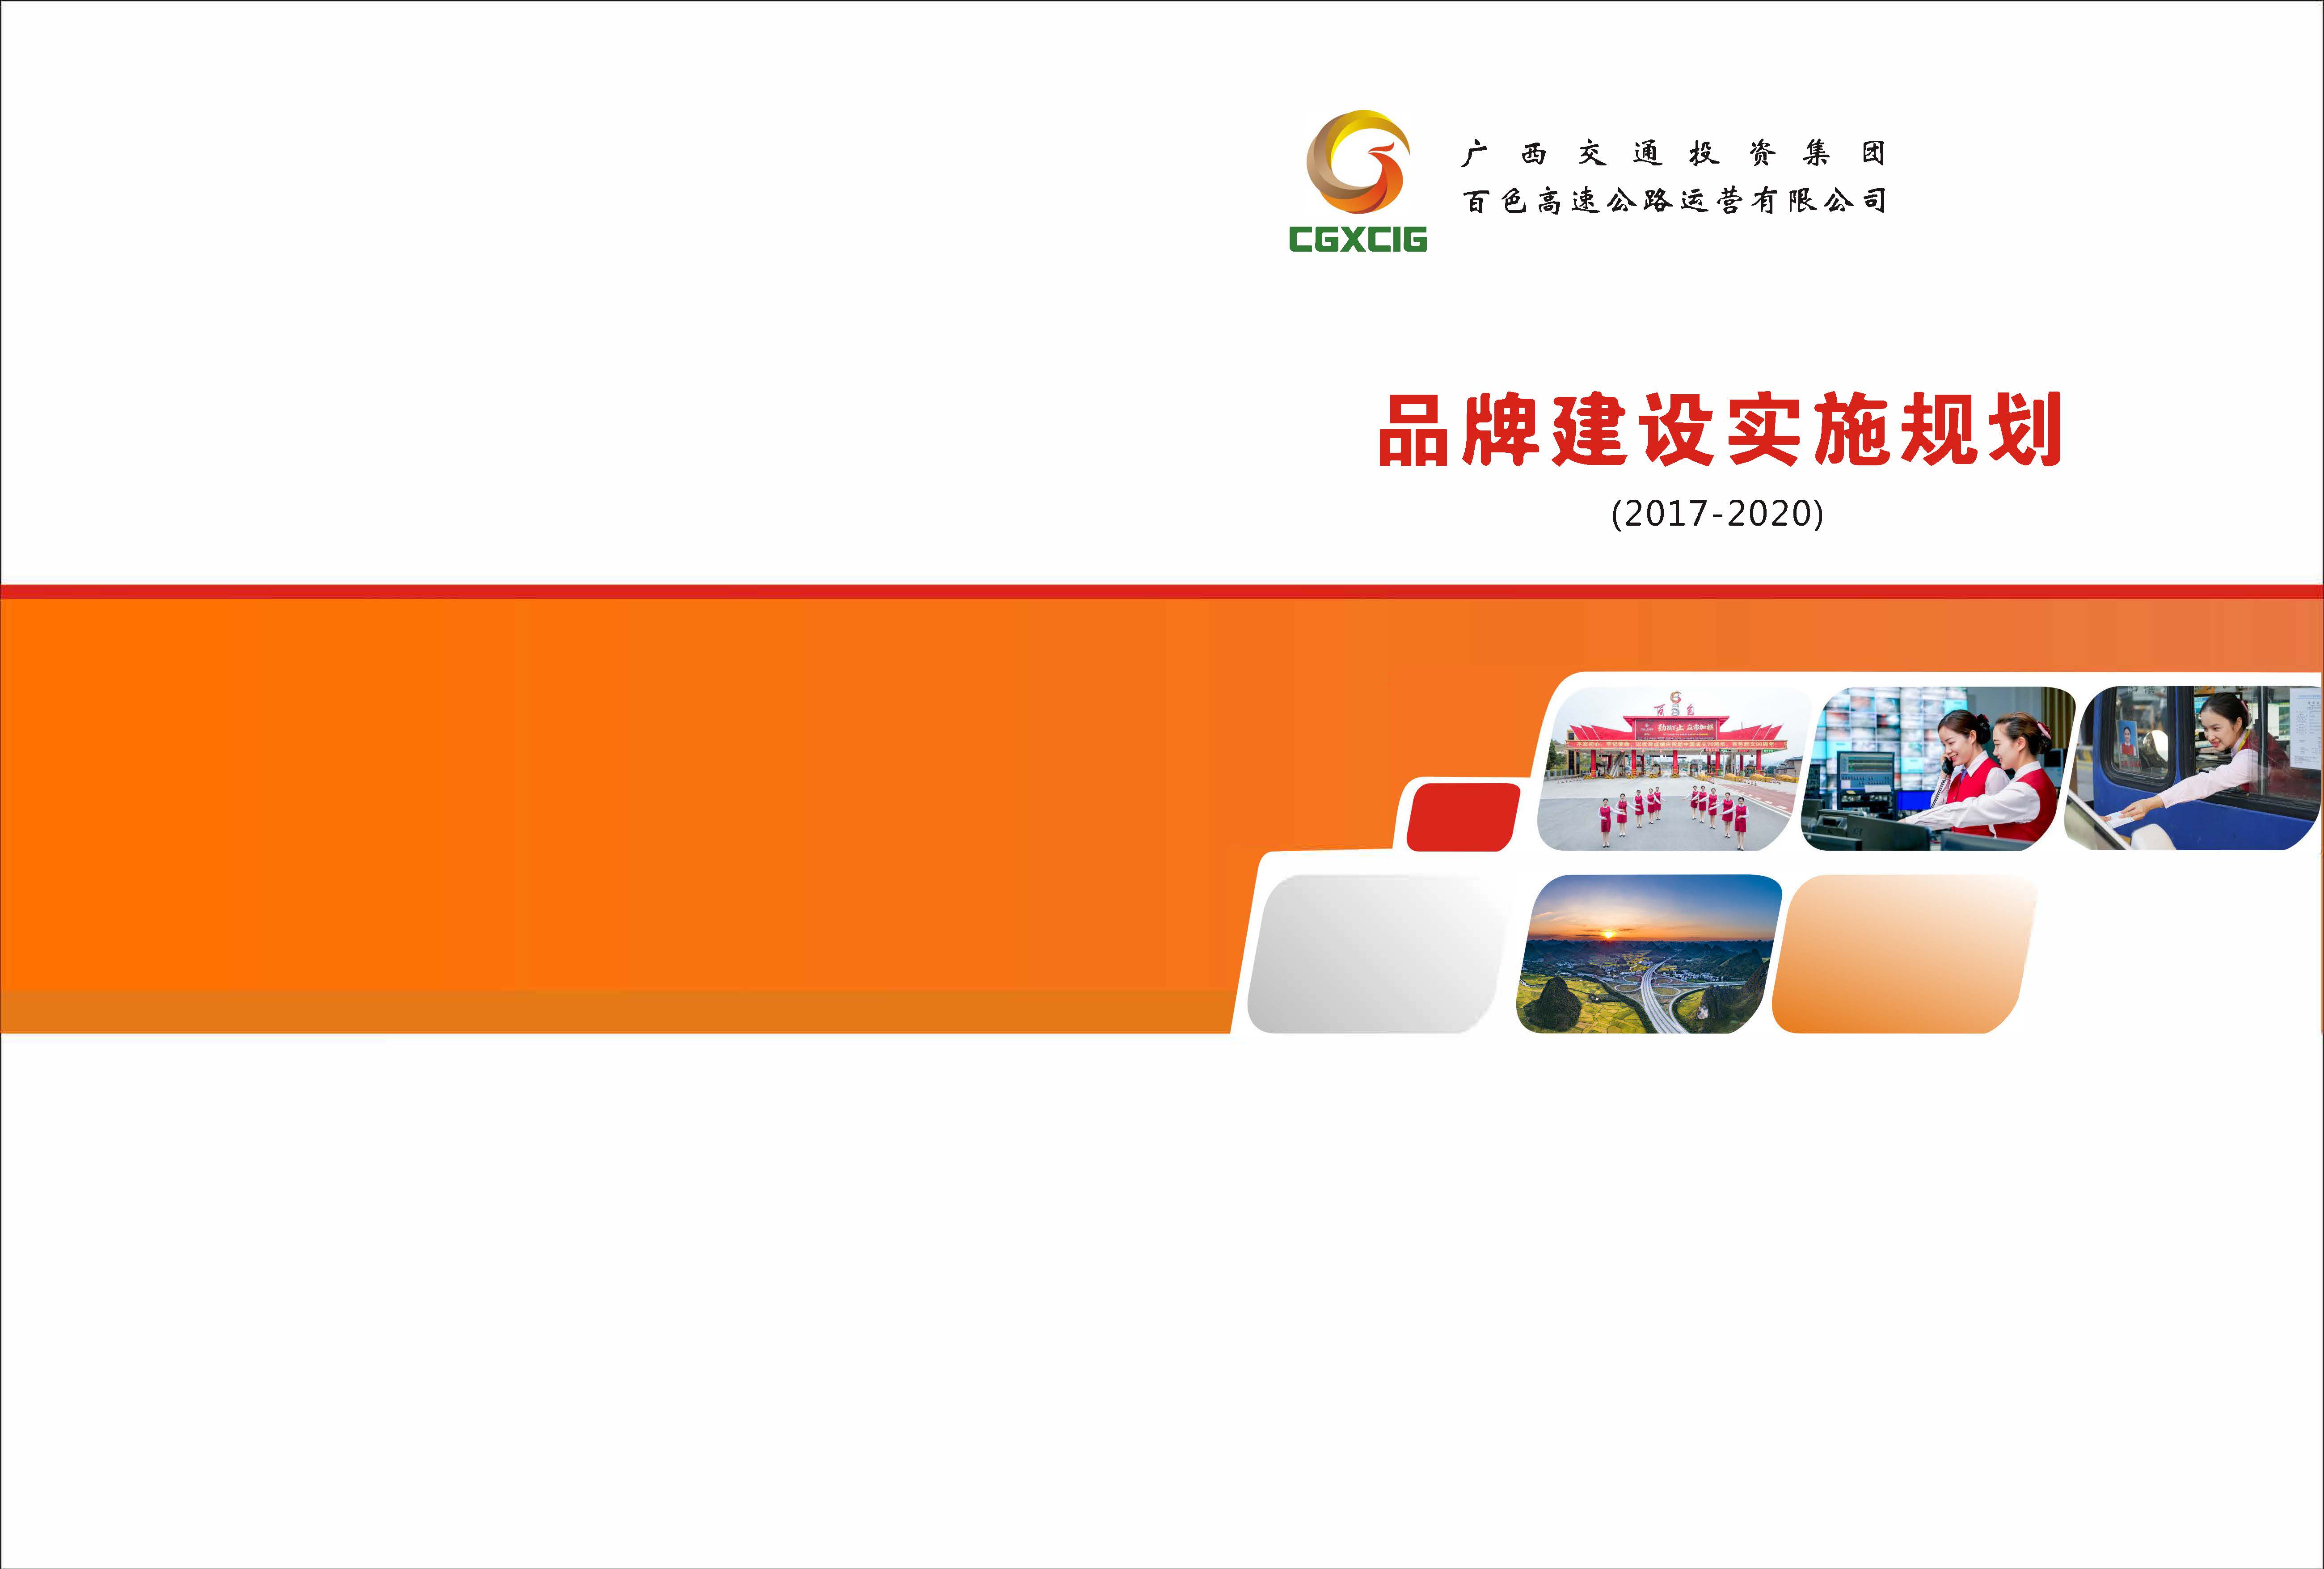 广西交通投资集团百色高速公路运营有限公司《品牌建设实施规划》